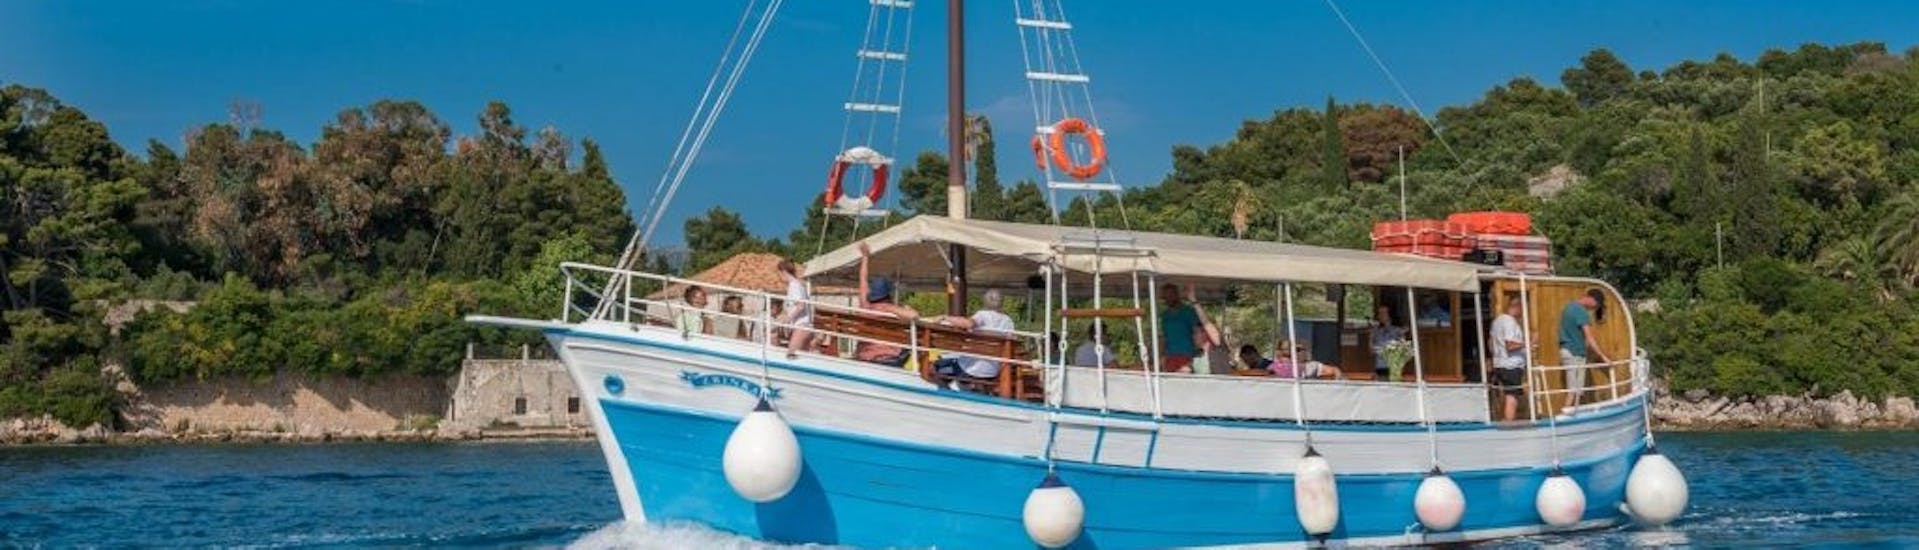 Immagine della barca di Dubrovnik Islands Tours durante la gita in barca alle isole Elafiti da Dubrovnik.